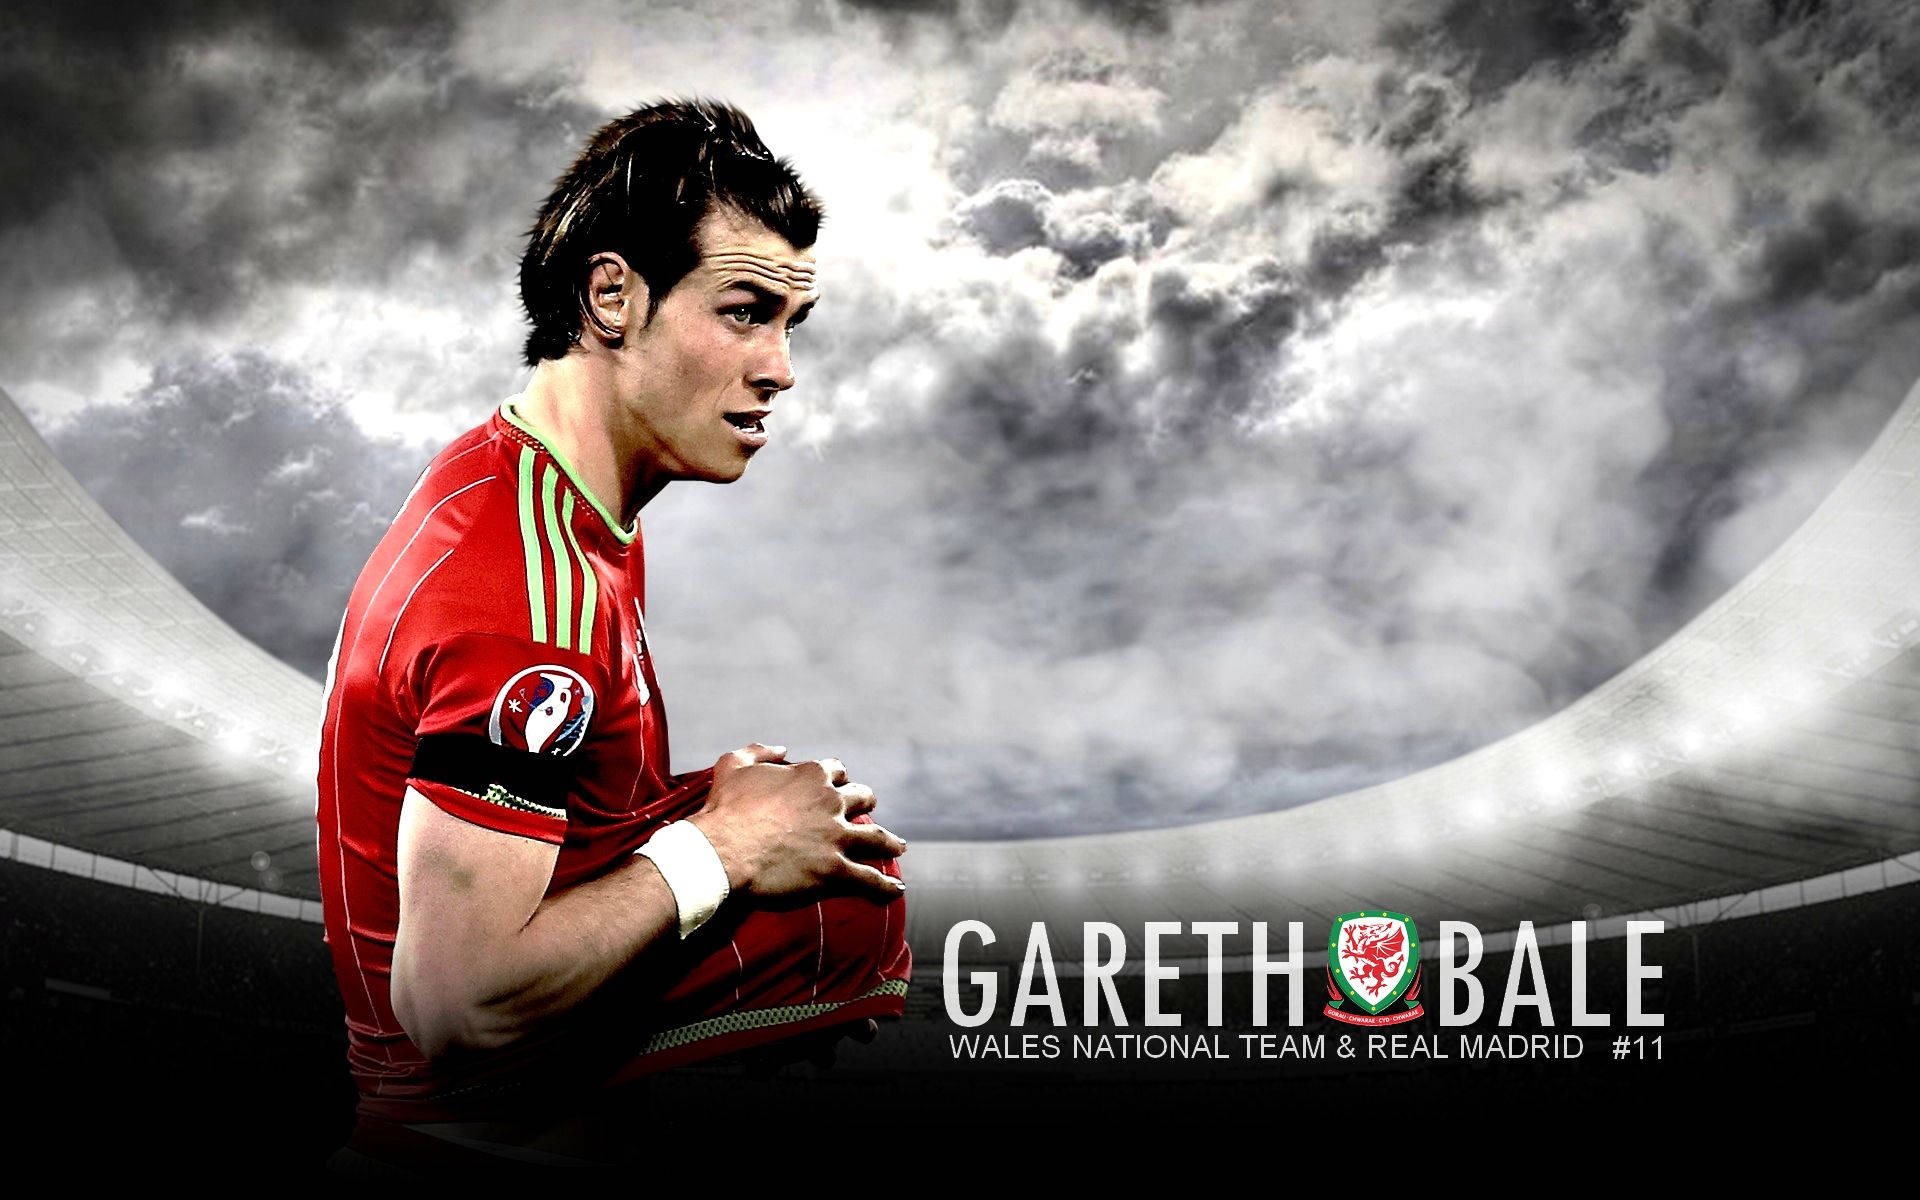 Walesnationale Fußballmannschaft Gareth Bale Fanart Wallpaper